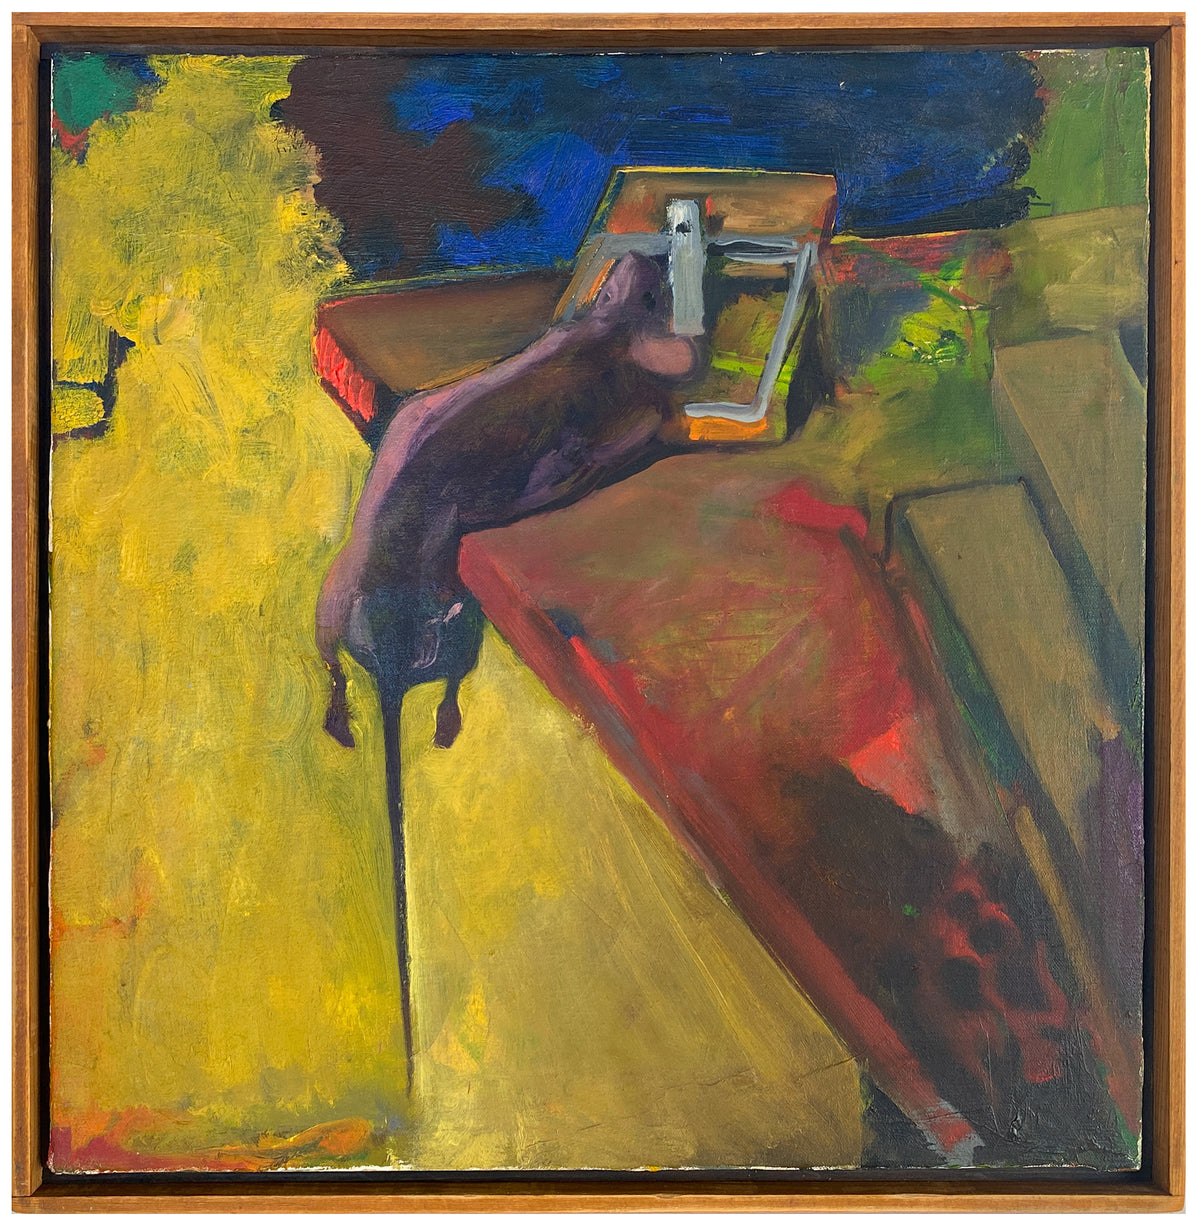 &lt;I&gt;Dead Mouse&lt;/I&gt; &lt;br&gt;1972 Oil on Canvas &lt;br&gt;&lt;br&gt;#Z0002